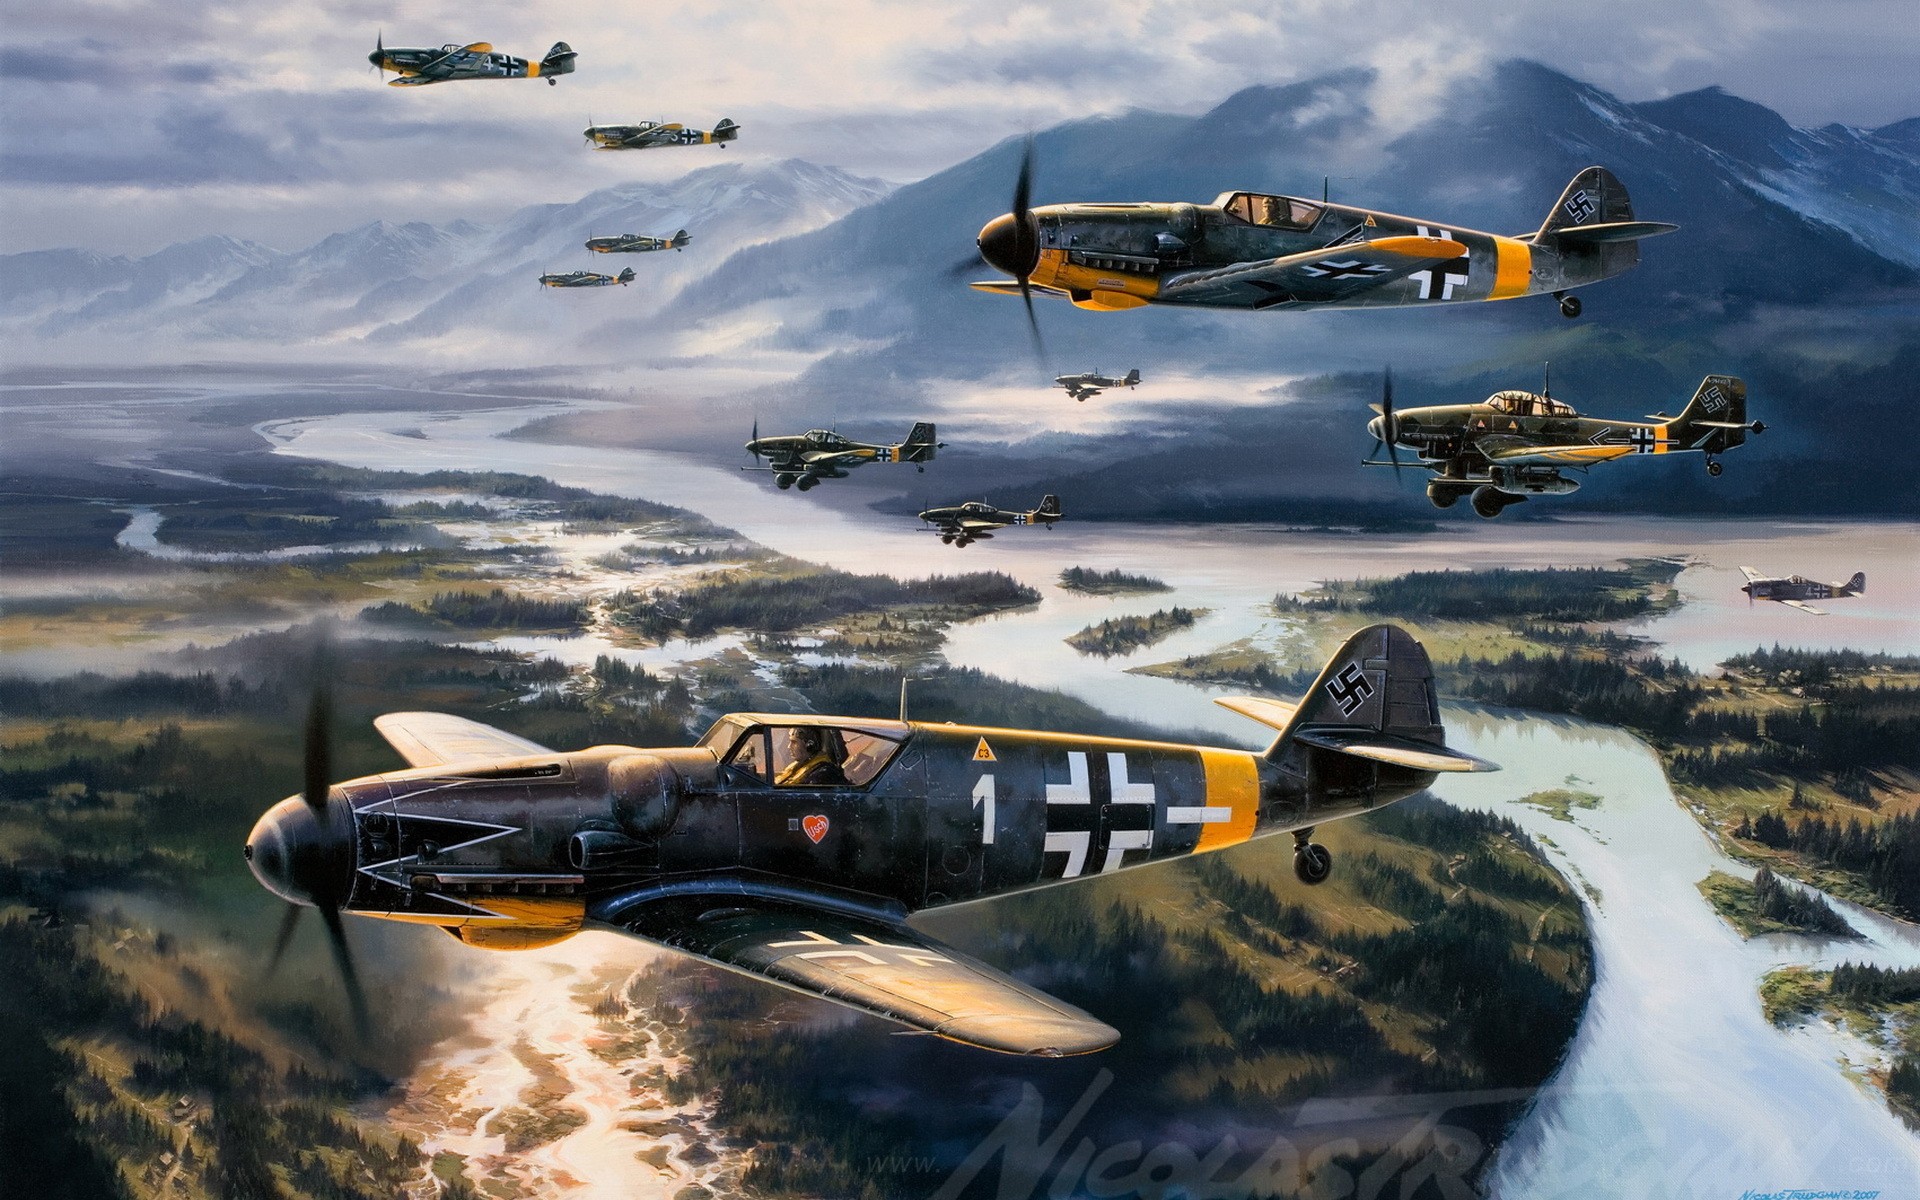 Messerschmitt, Messerschmitt Bf 109, World War II, Germany, Military, Aircraft, Military Aircraft, Luftwaffe, Airplane Wallpaper